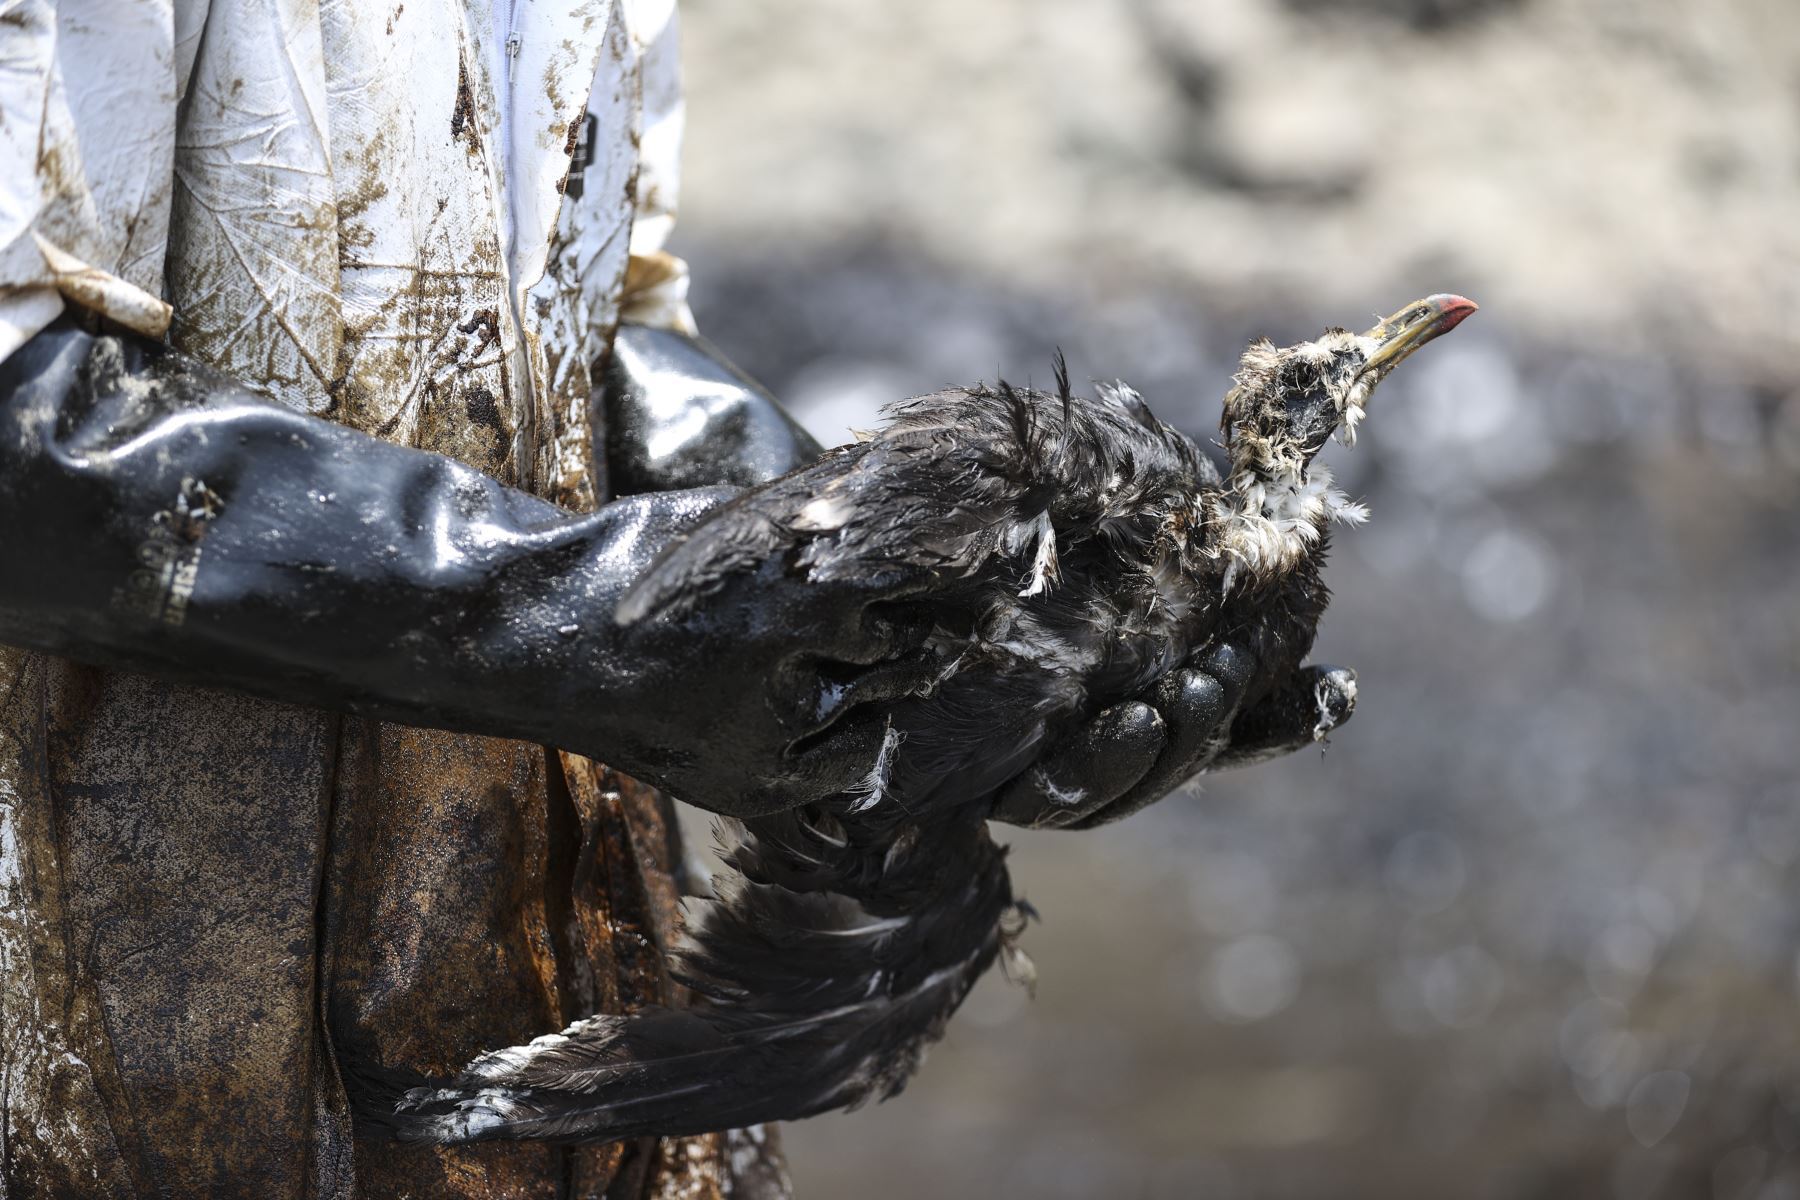 El derrame de petróleo ocurrido hace un año en el mar de Ventanilla provocó la muerte de 1,855 especímenes de fauna silvestre marino costera y la afectación de otros 198 ejemplares, precisó el Servicio Nacional Forestal y de Fauna Silvestre (Serfor). ANDINA/Jhonel Rodríguez Robles